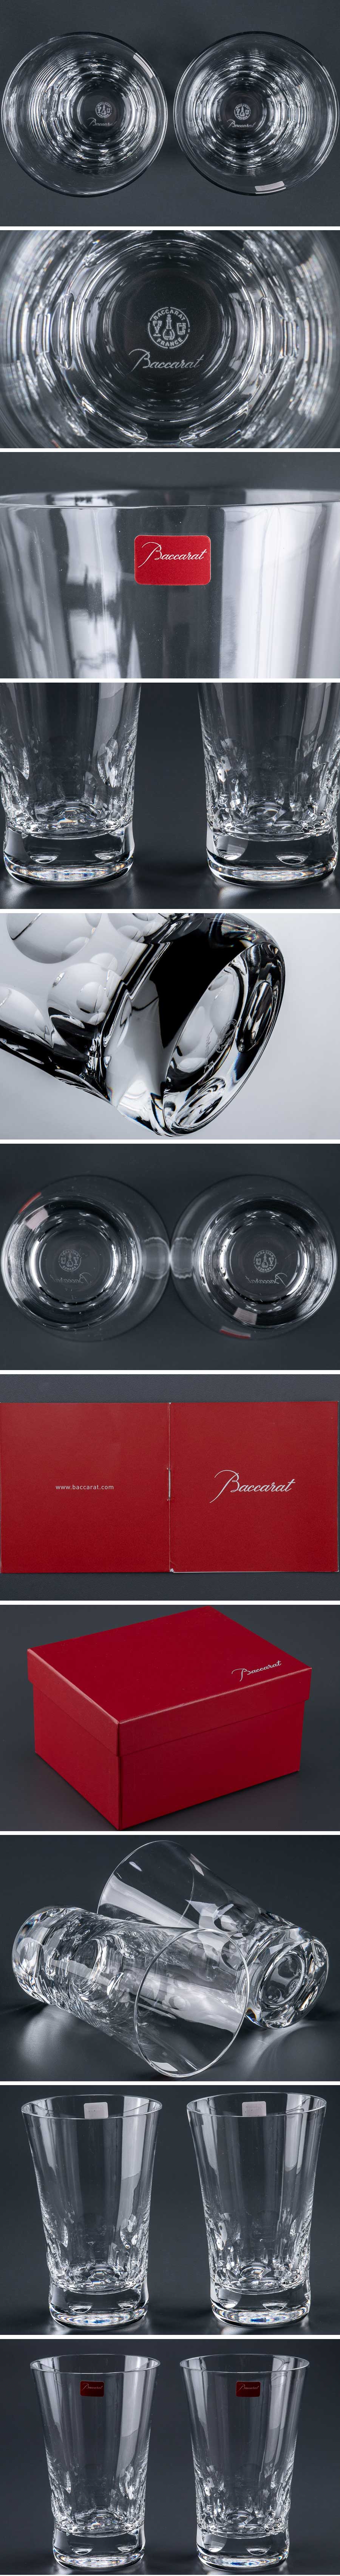 最安値正規品『 バカラ baccarat 「 ベルーガ 」 タンブラー グラス 2客 箱付 9929 』 2個組 洋食器 ブランド テーブルウェア クリスタルガラス 工芸ガラス